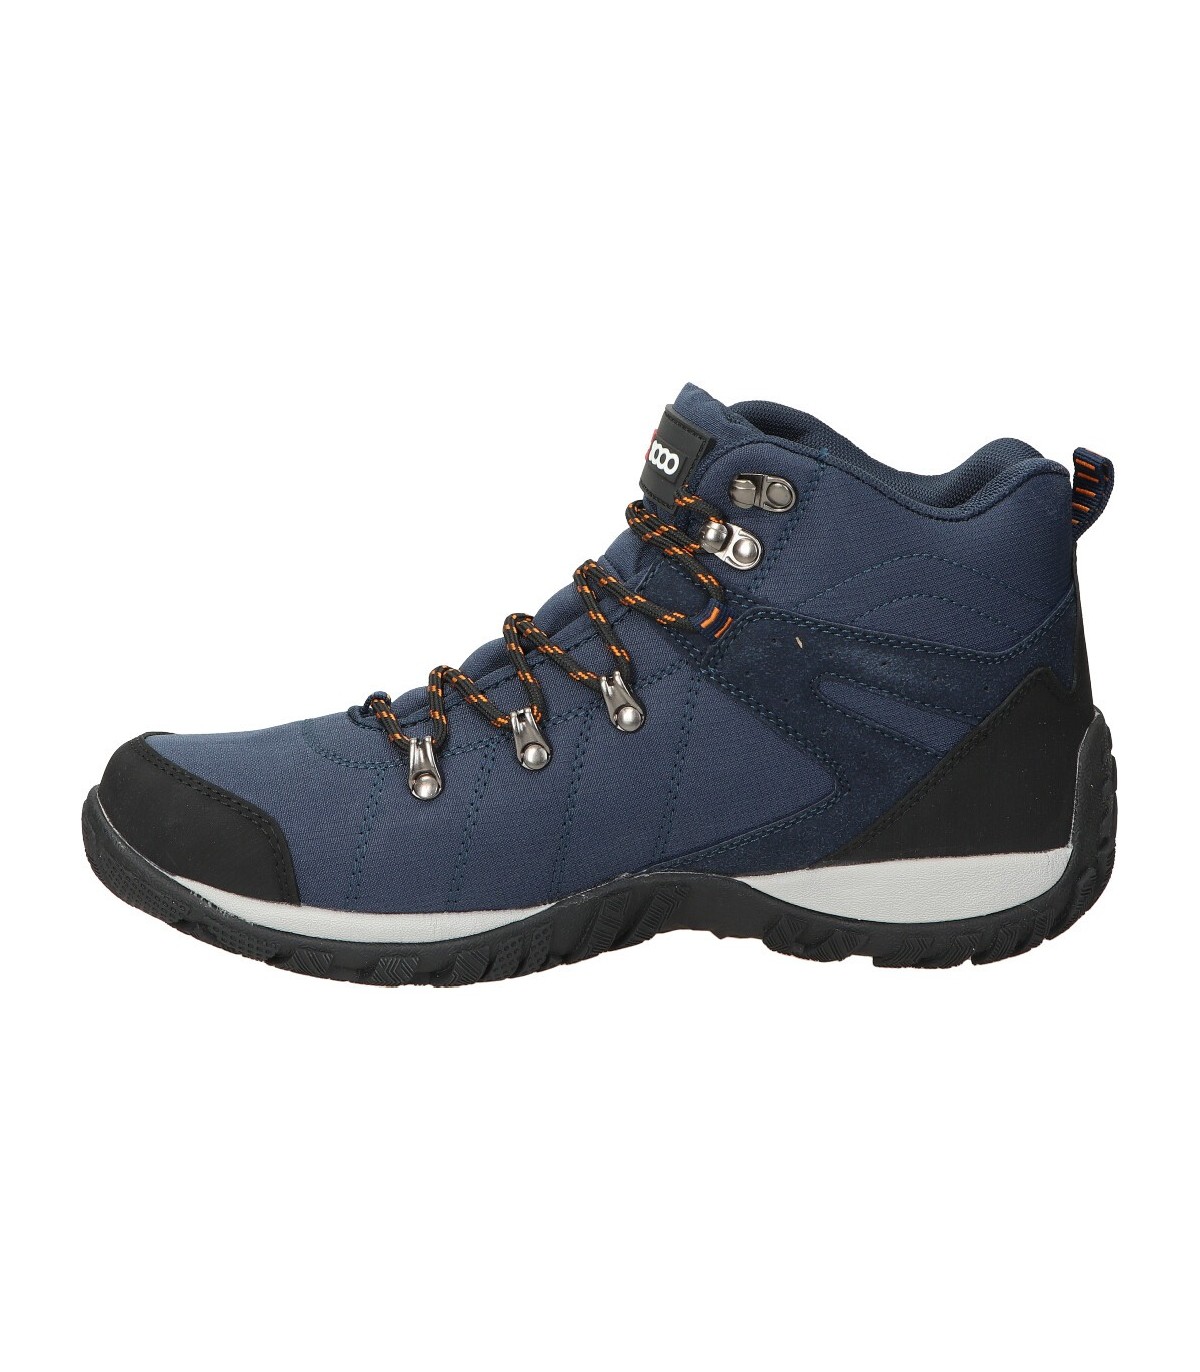 Zapatillas trekking azules de hombre +8000 Tavos online en MEGACALZADO